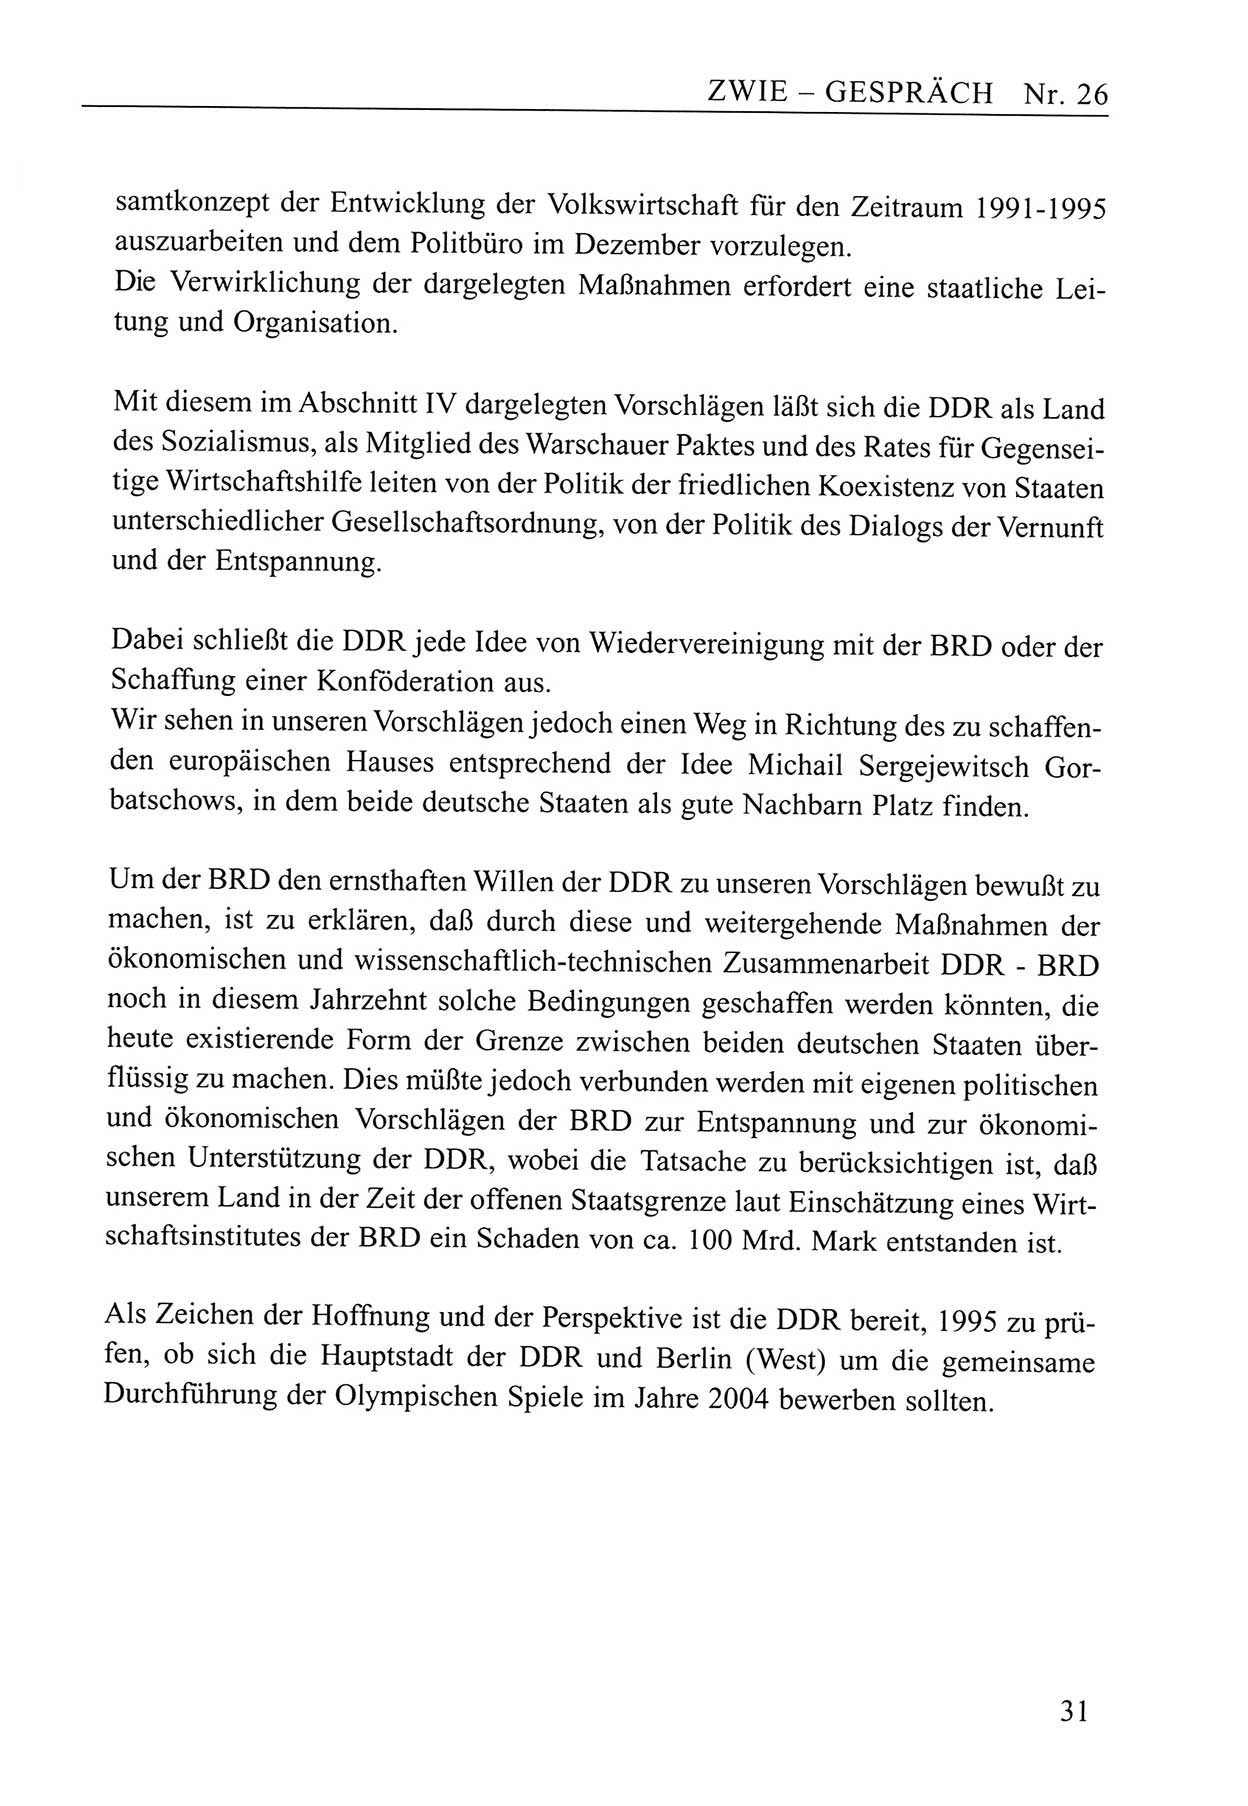 Zwie-Gespräch, Beiträge zum Umgang mit der Staatssicherheits-Vergangenheit [Deutsche Demokratische Republik (DDR)], Ausgabe Nr. 26, Berlin 1995, Seite 31 (Zwie-Gespr. Ausg. 26 1995, S. 31)